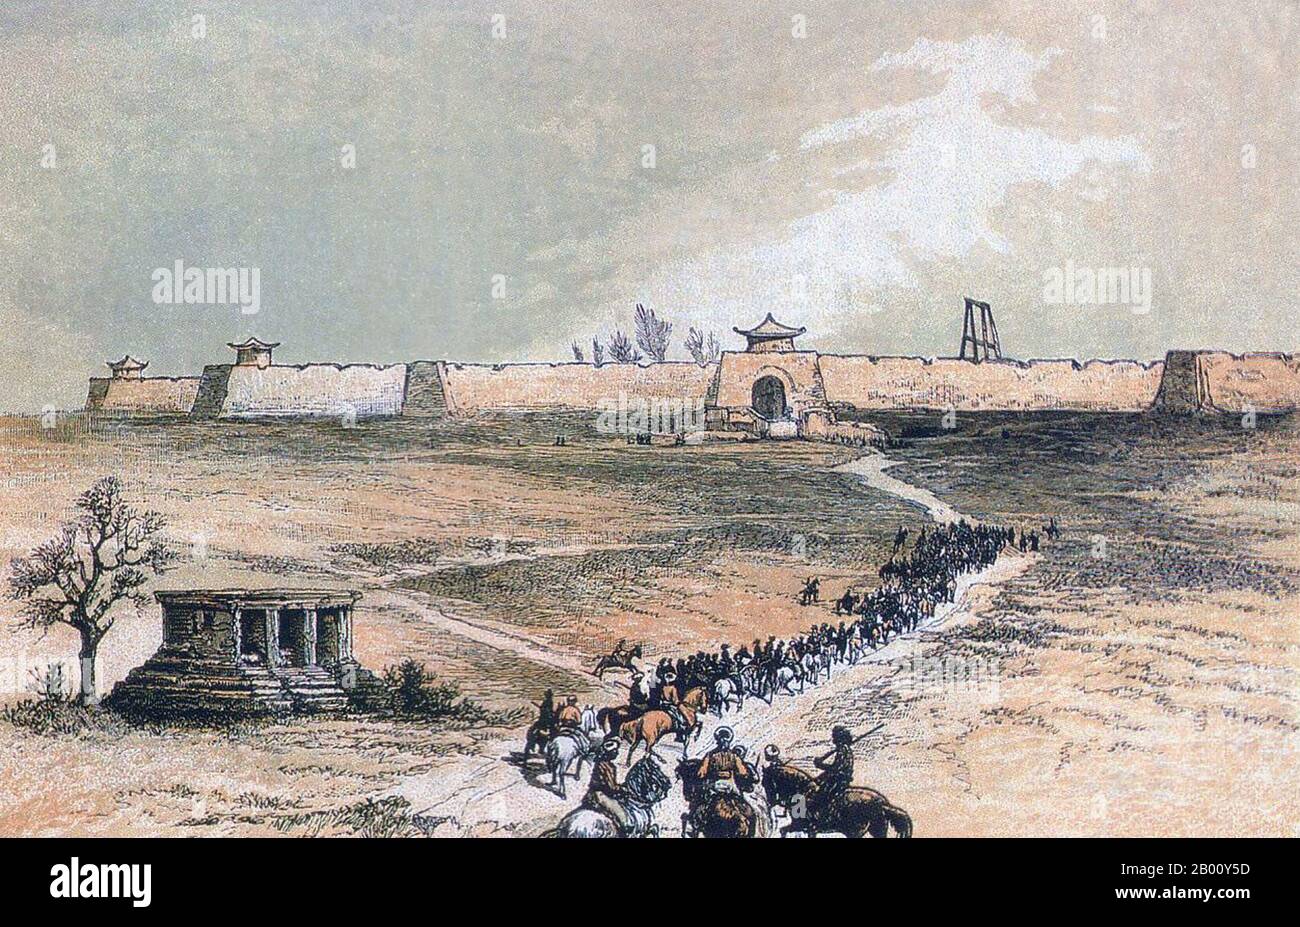 Chine: 'Approche de Yarkand, Xinjiang'. Illustration de Robert B. Shaw (19e siècle), 1868. Yarkand, au Xinjiang, est l'une des principales villes de la région du bassin du Tarim, au sud du pays, et est depuis longtemps associée au nationalisme et au séparatisme ouïghours. Elle partage ces valeurs avec Kashgar et Kholan, mais devient progressivement une ville chinoise plus Han. Cette image date de la visite de Robert Shaw en 1868. Les jalles sont visibles derrière le mur à droite de la porte de la ville. Banque D'Images